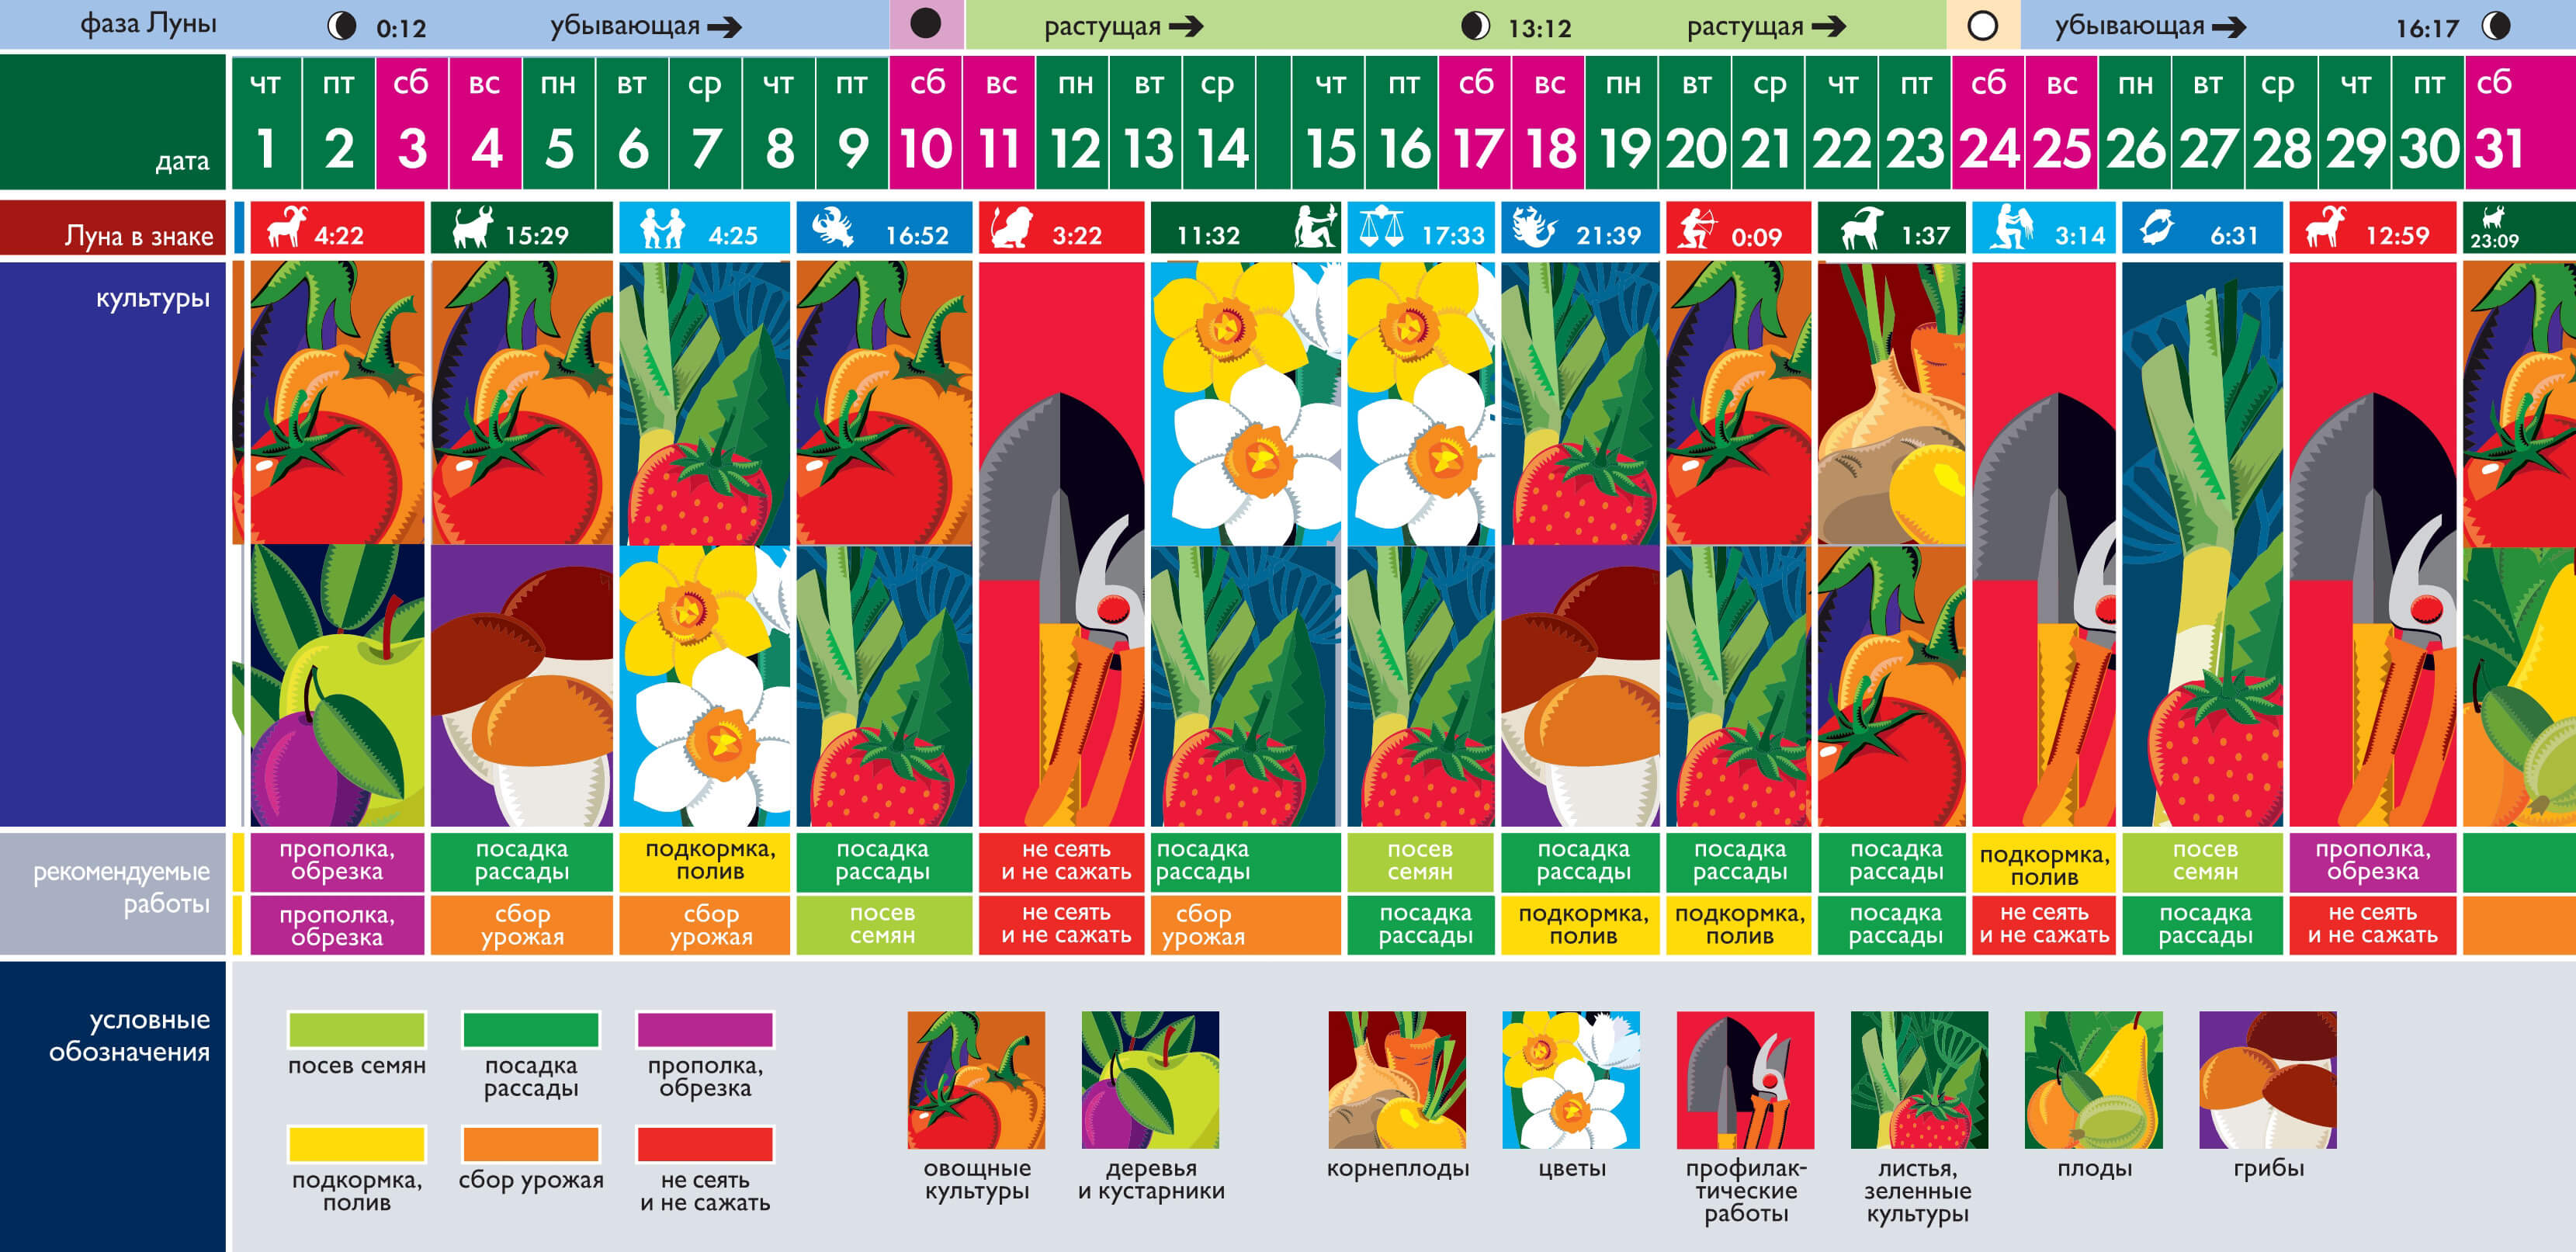 Лунный календарь огородника июль. Календарь садовода. Лунный календарь для посадки растений в июле. Календарь садовода на июль. Календарь огородника на июль 2021.